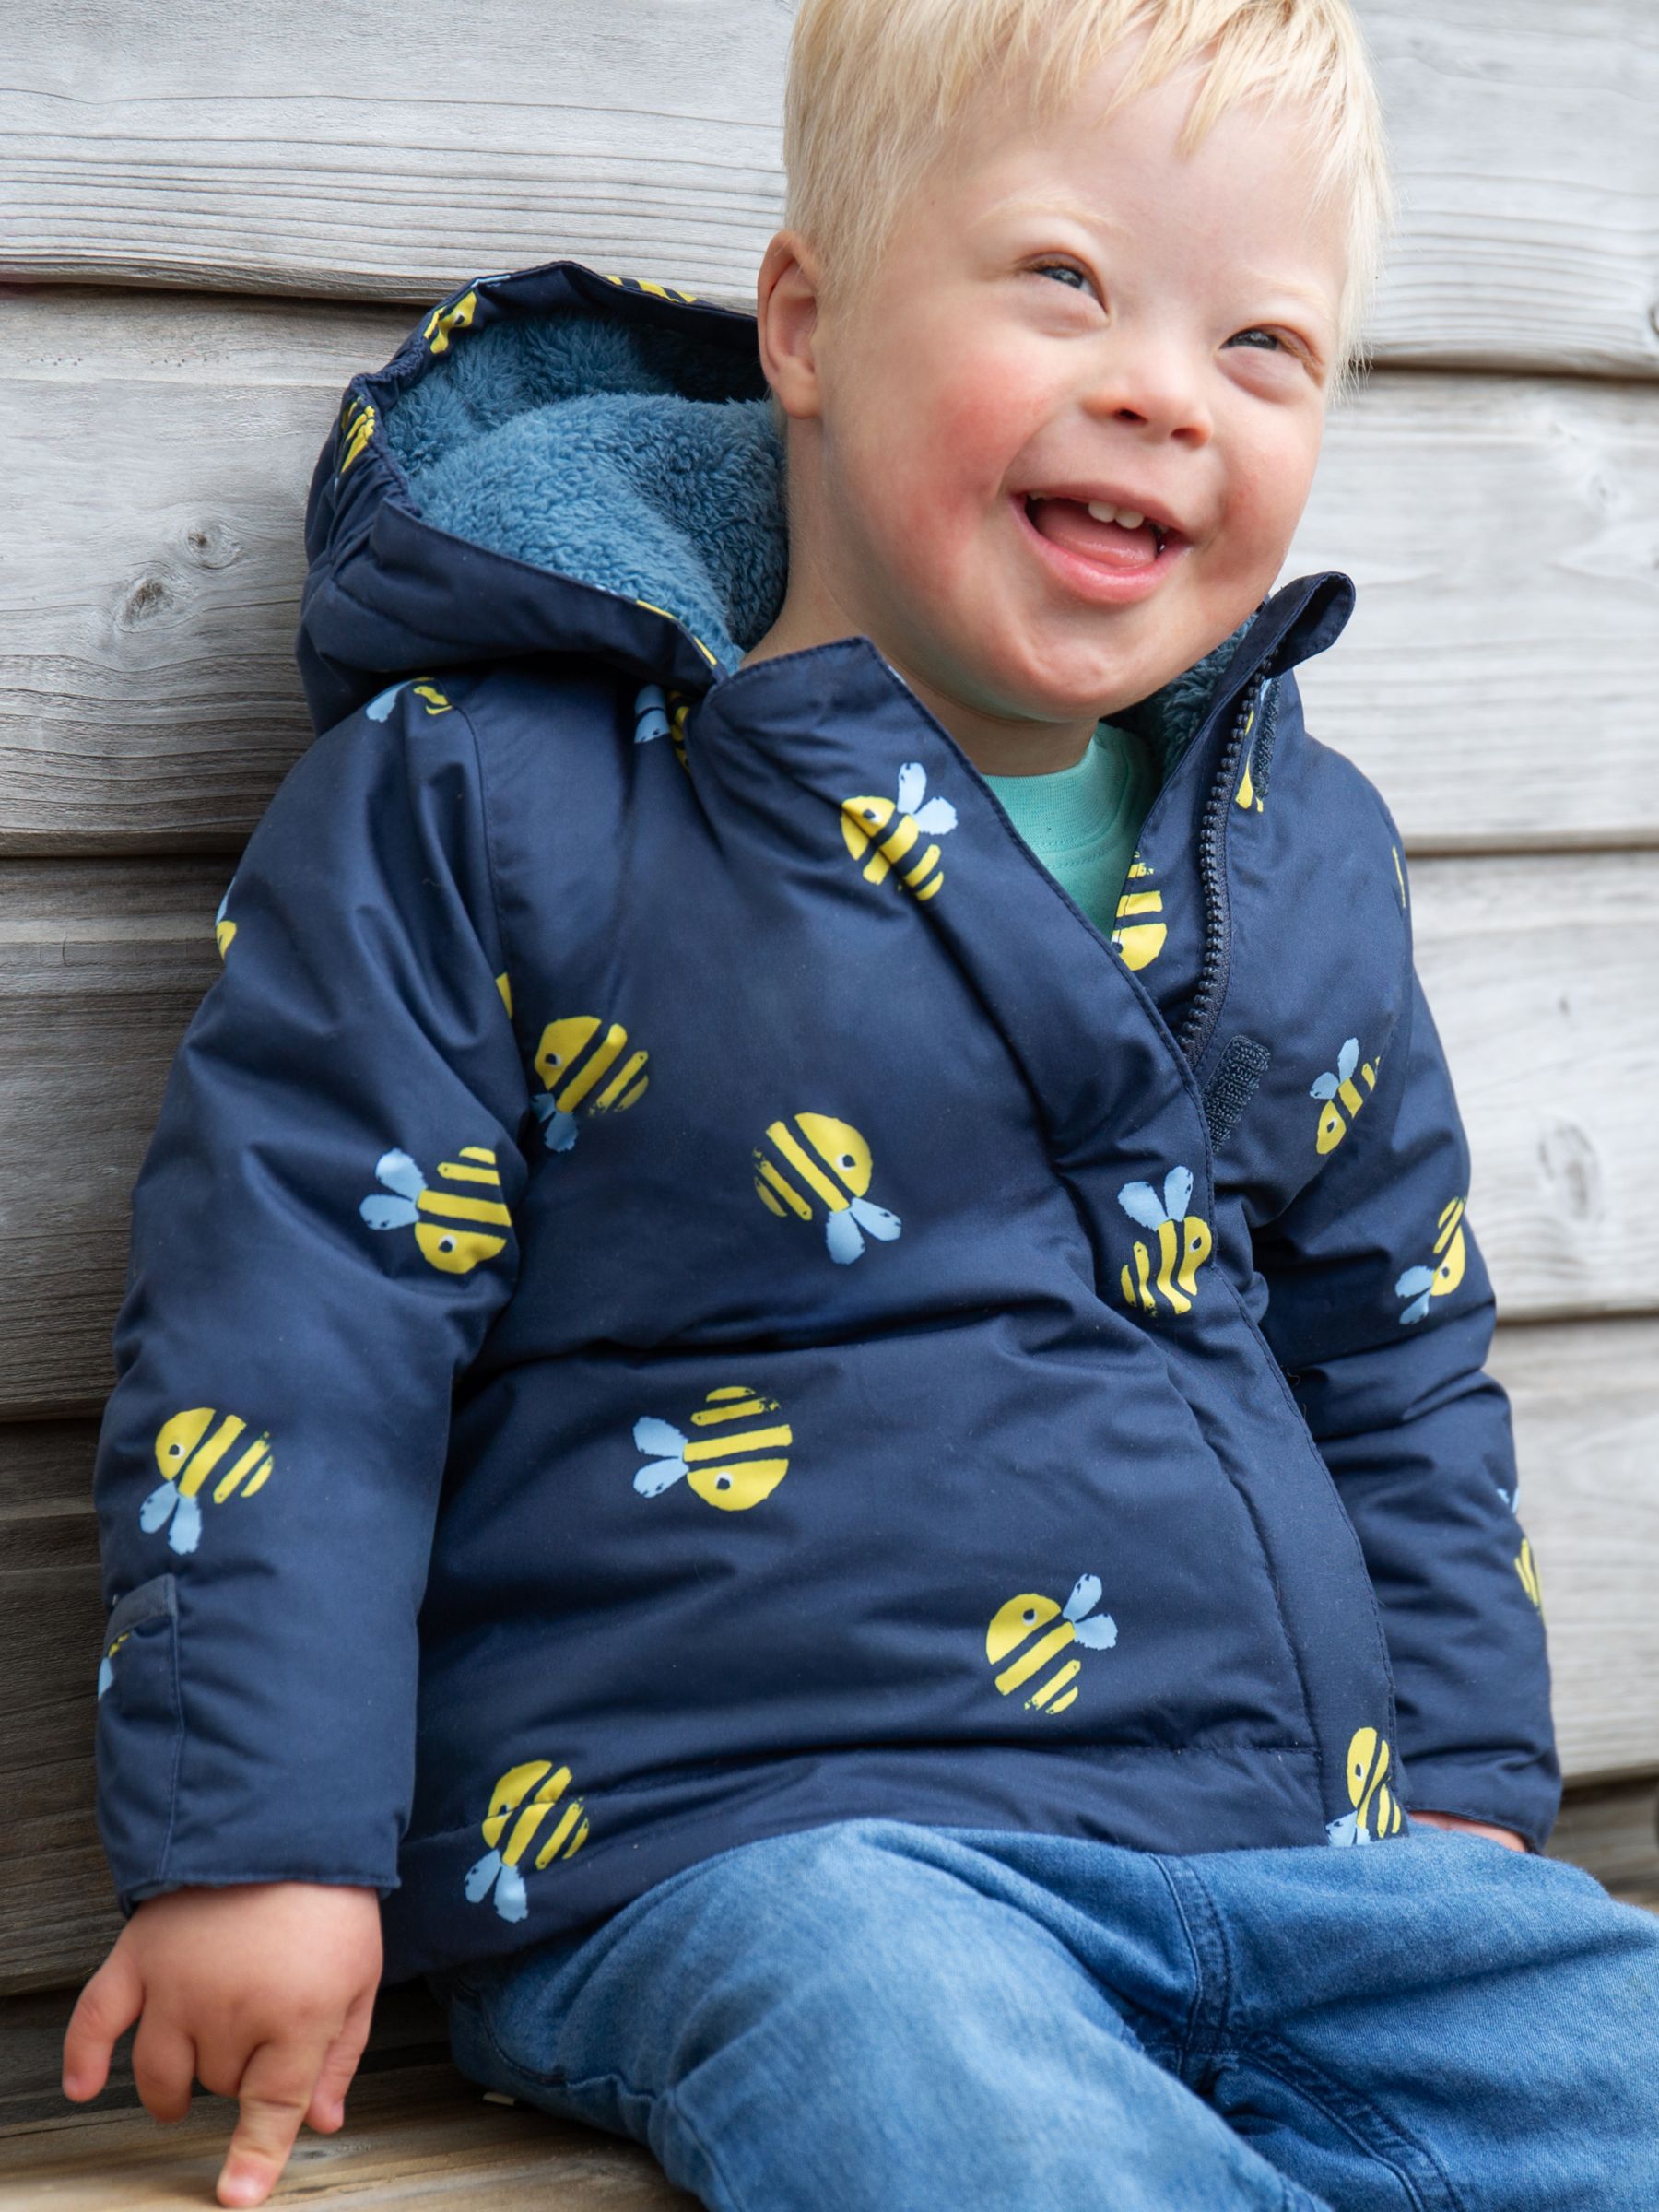 Frugi Baby 2 in 1 Bee Rambler Pram Suit to Coat, Navy/Multi, Newborn